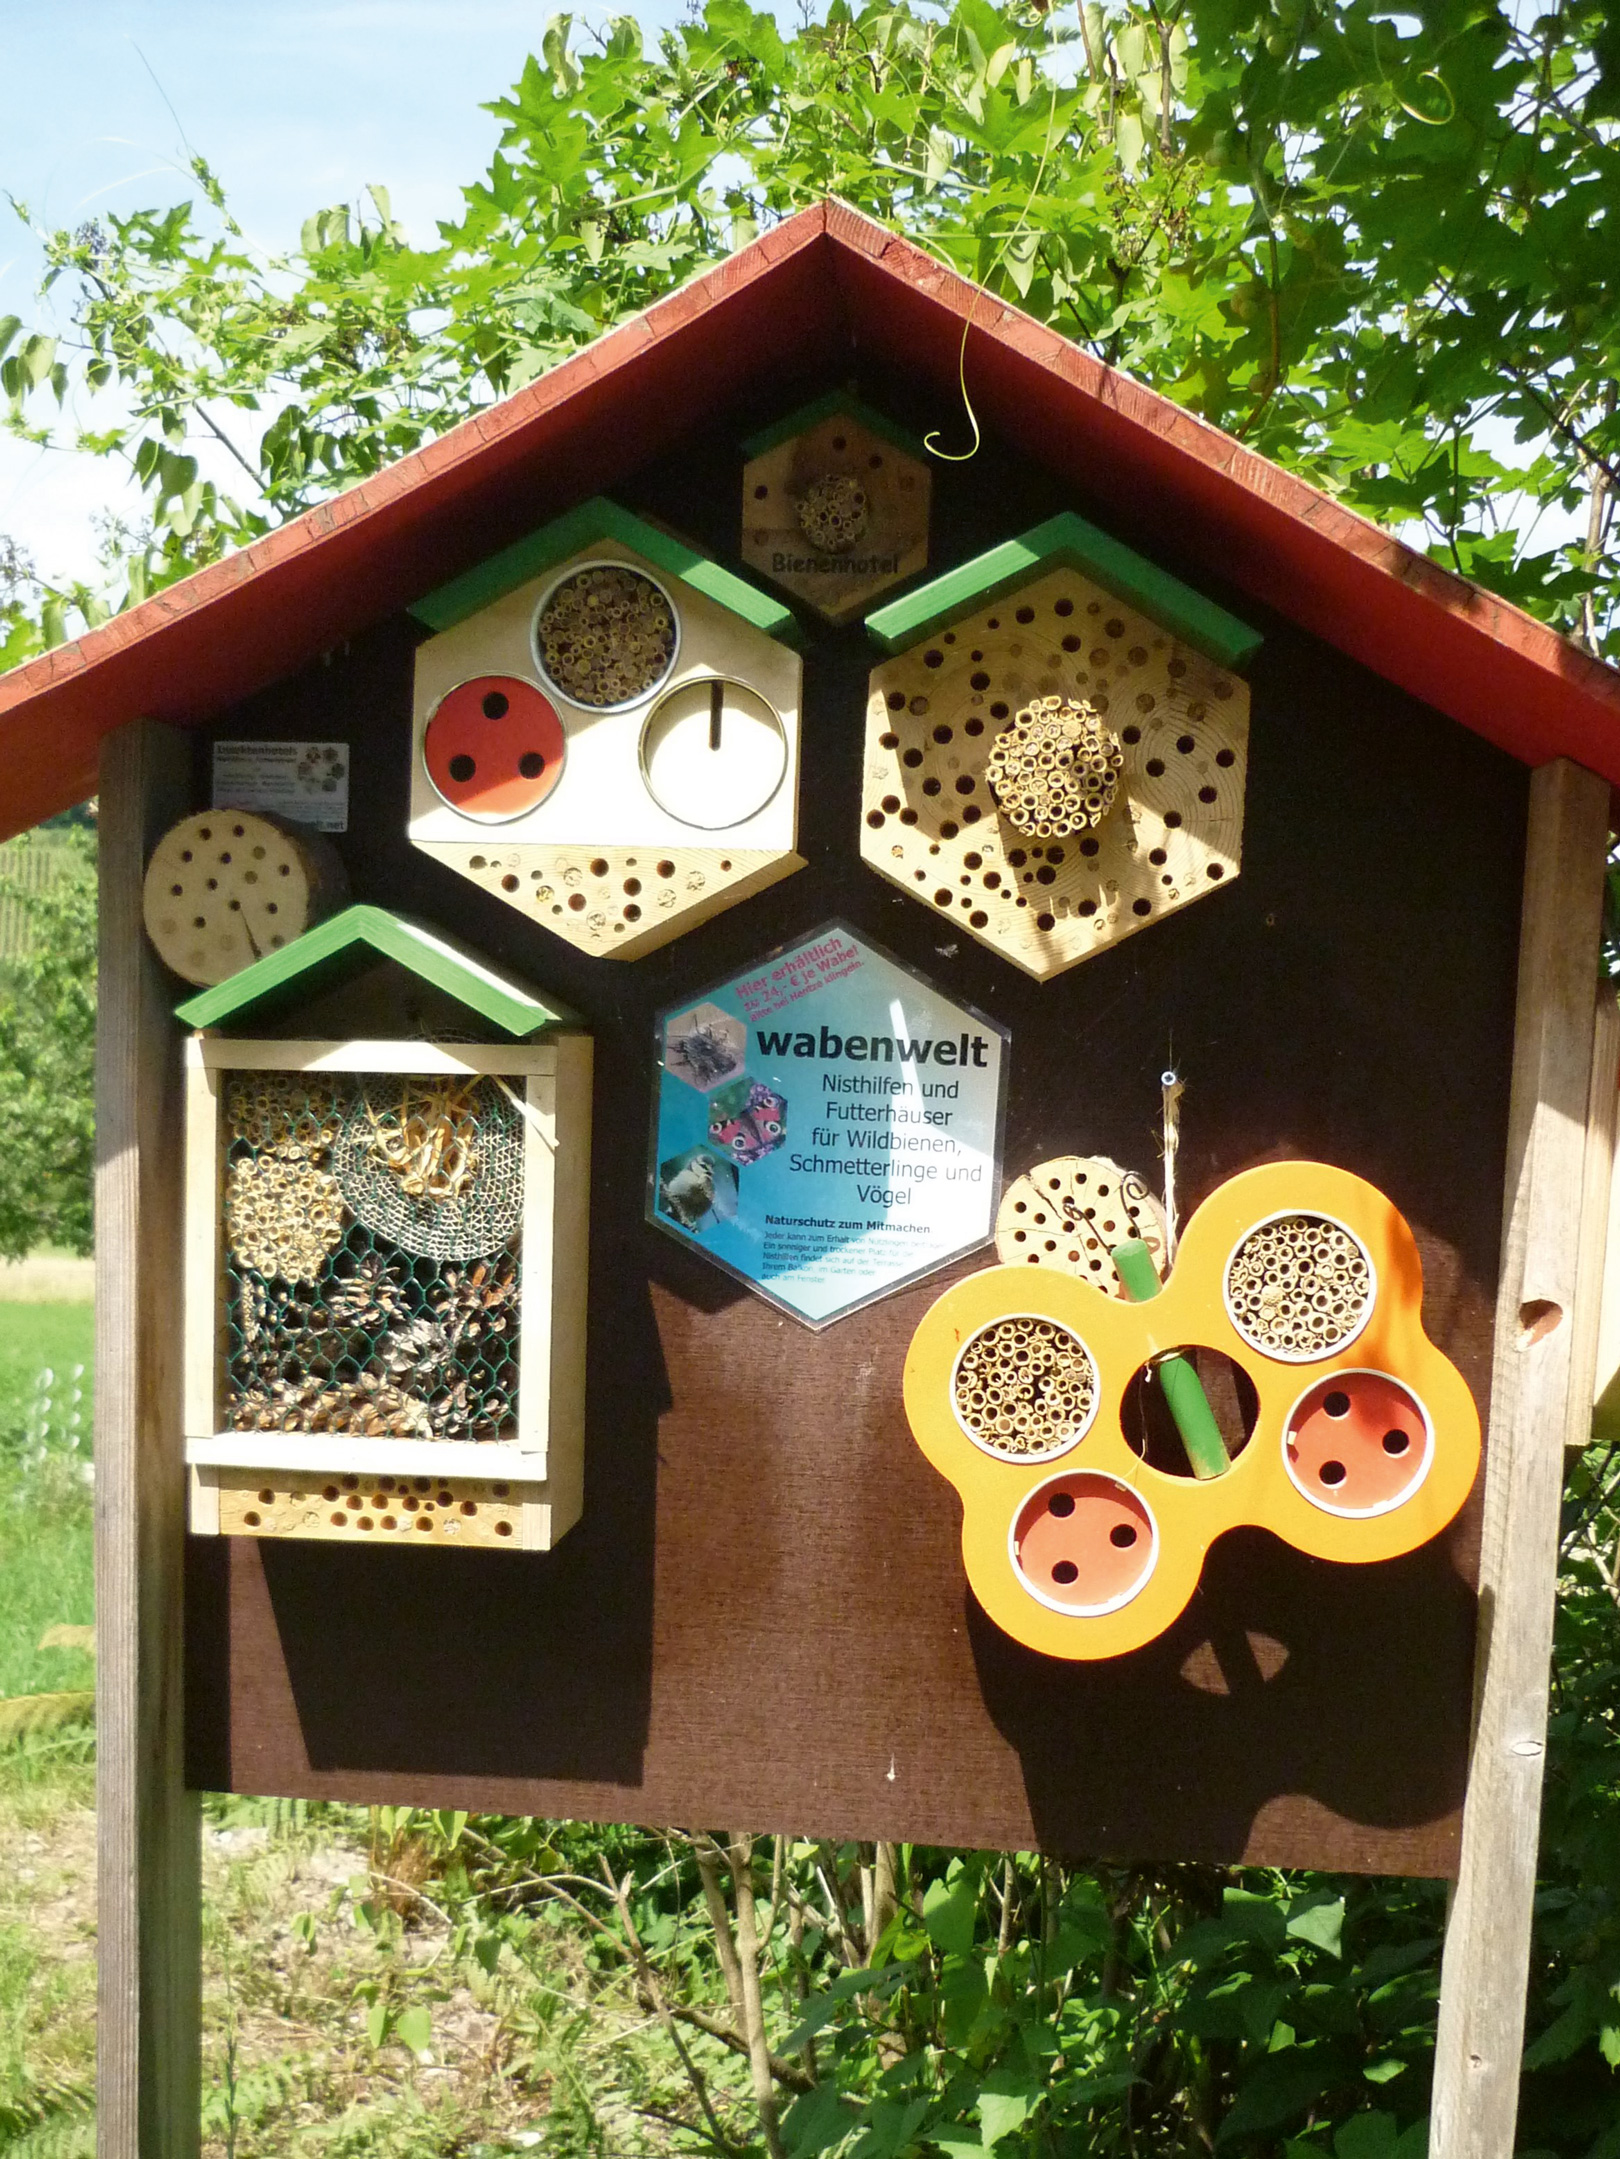 Eine kleine Holzwand in Form eines Häuschen mit unterschiedlichen Nistplätzen ist zu sehen. Nistplätze für unterschiedliche Wildbienen-Arten und für Schmetterlinge.